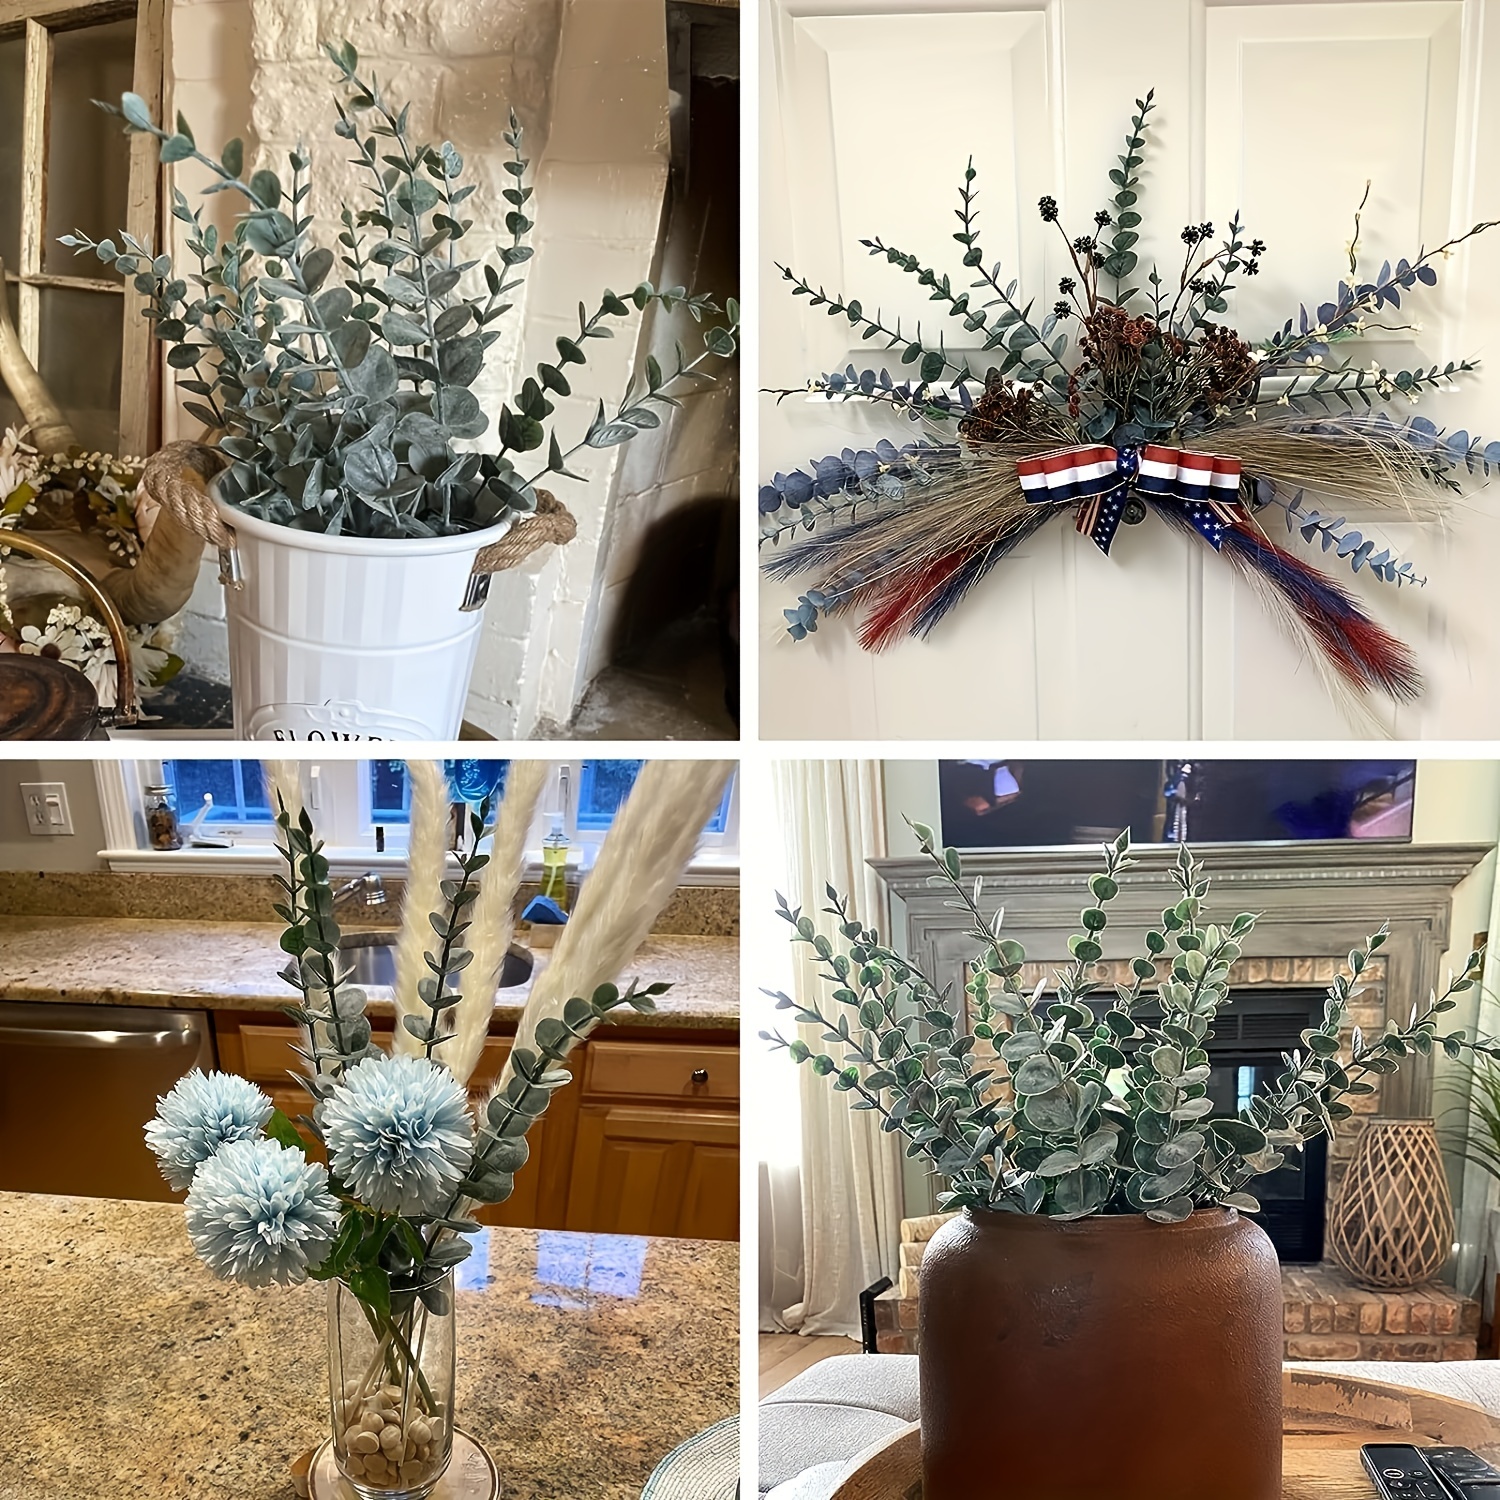 CEWOR 24 tallos de eucalipto para decoración de hojas de eucalipto  artificiales, ramas de vegetación sintética para centros de mesa de boda,  arreglo